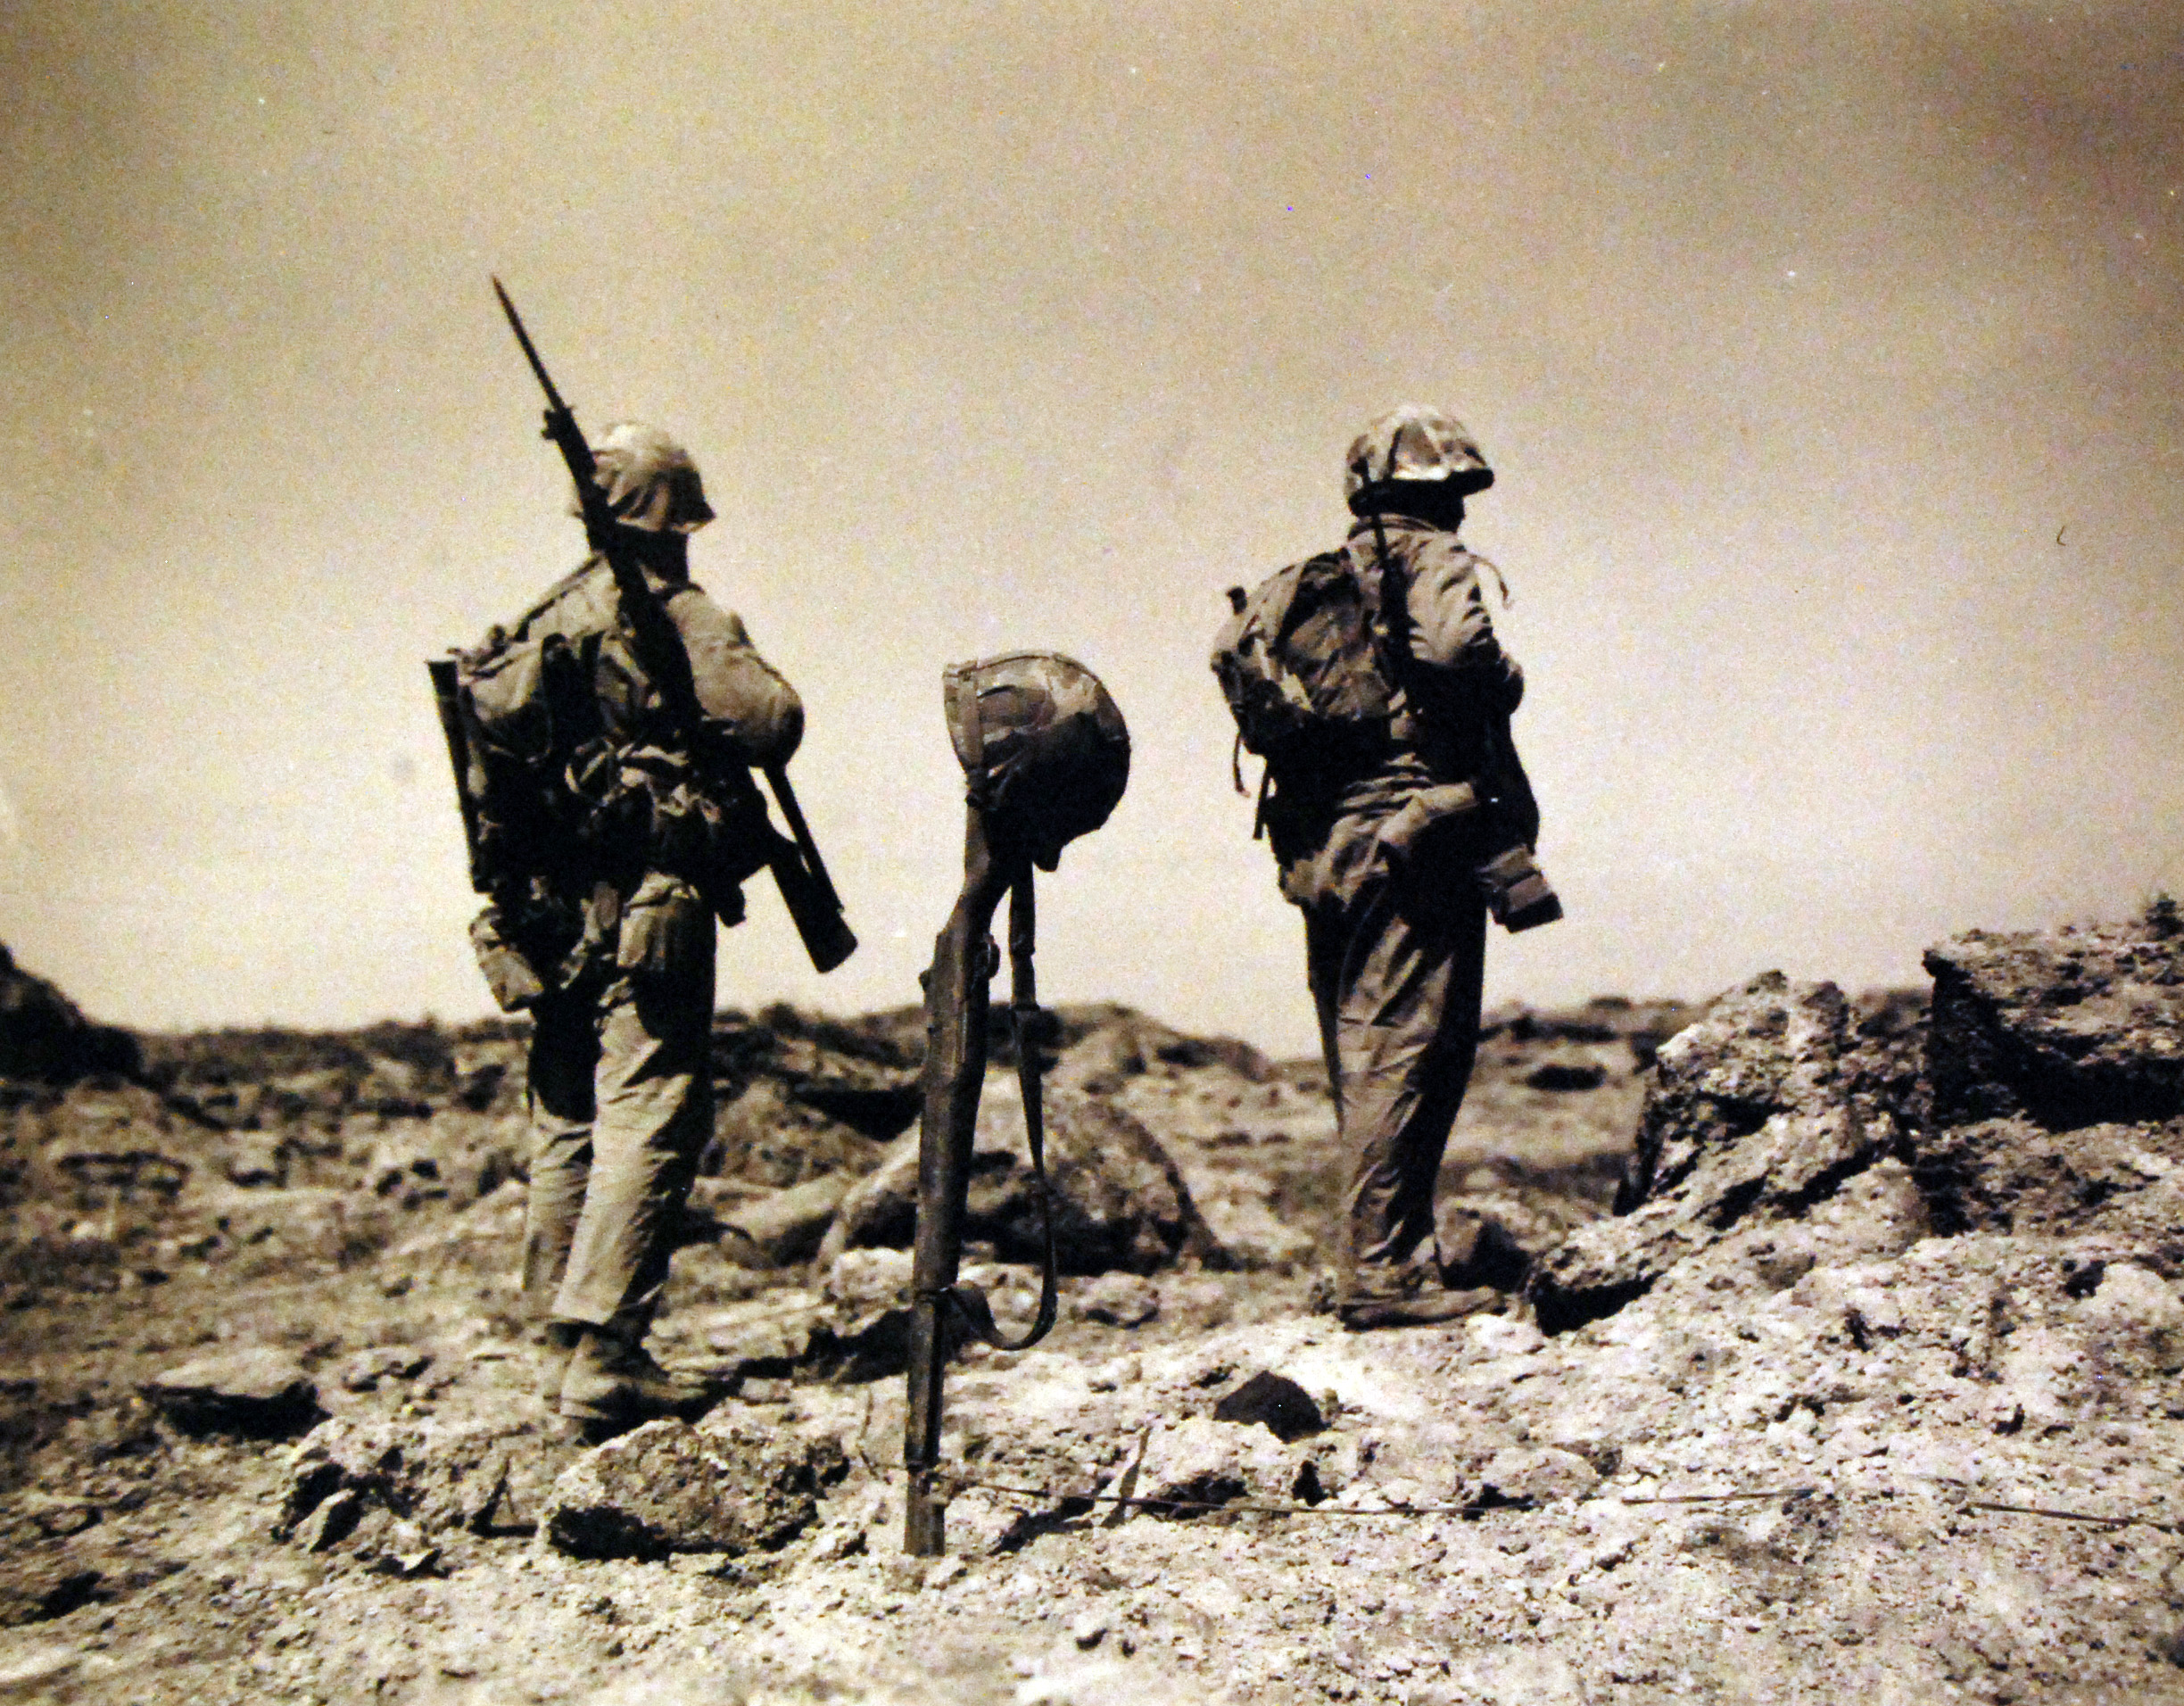 Whistling Past the Graveyard: How Iwo Jima Led Toward Hiroshima